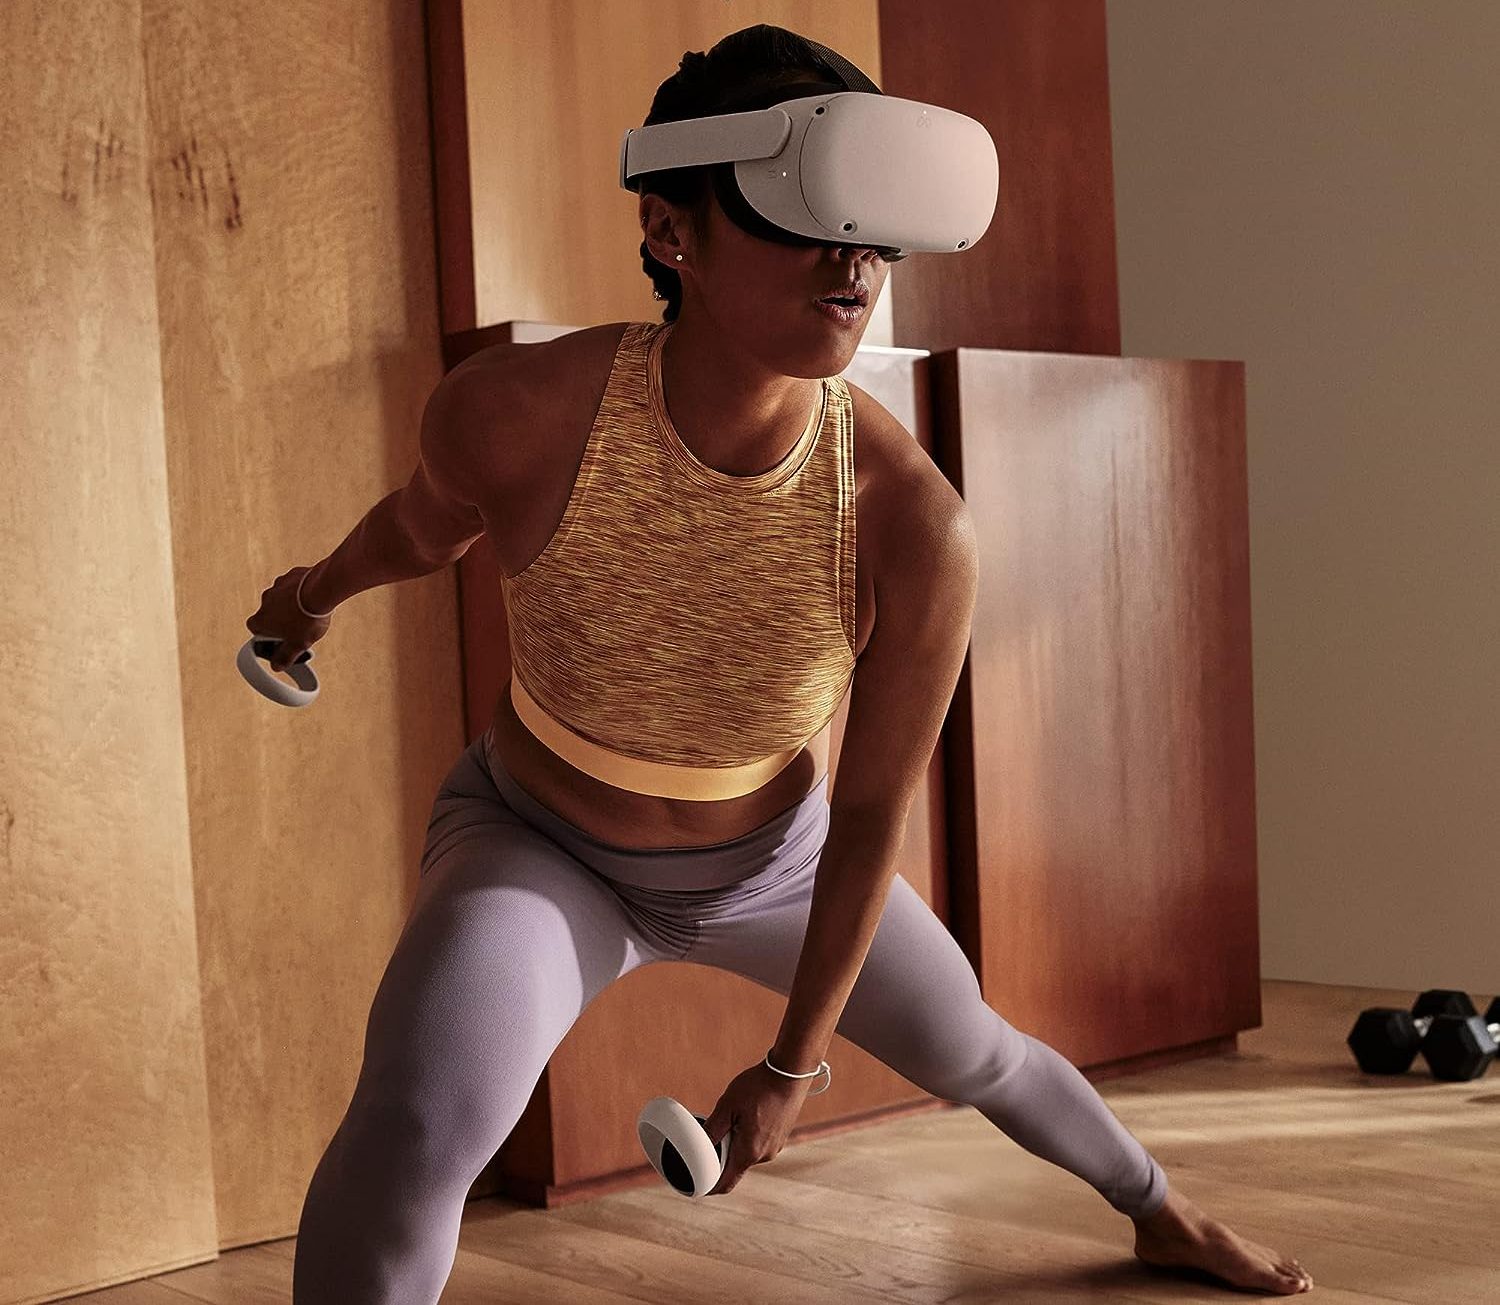 PSVR2, Pico 4, Meta Quest 2 Quels sont les meilleurs casques VR pour  s'amuser ?